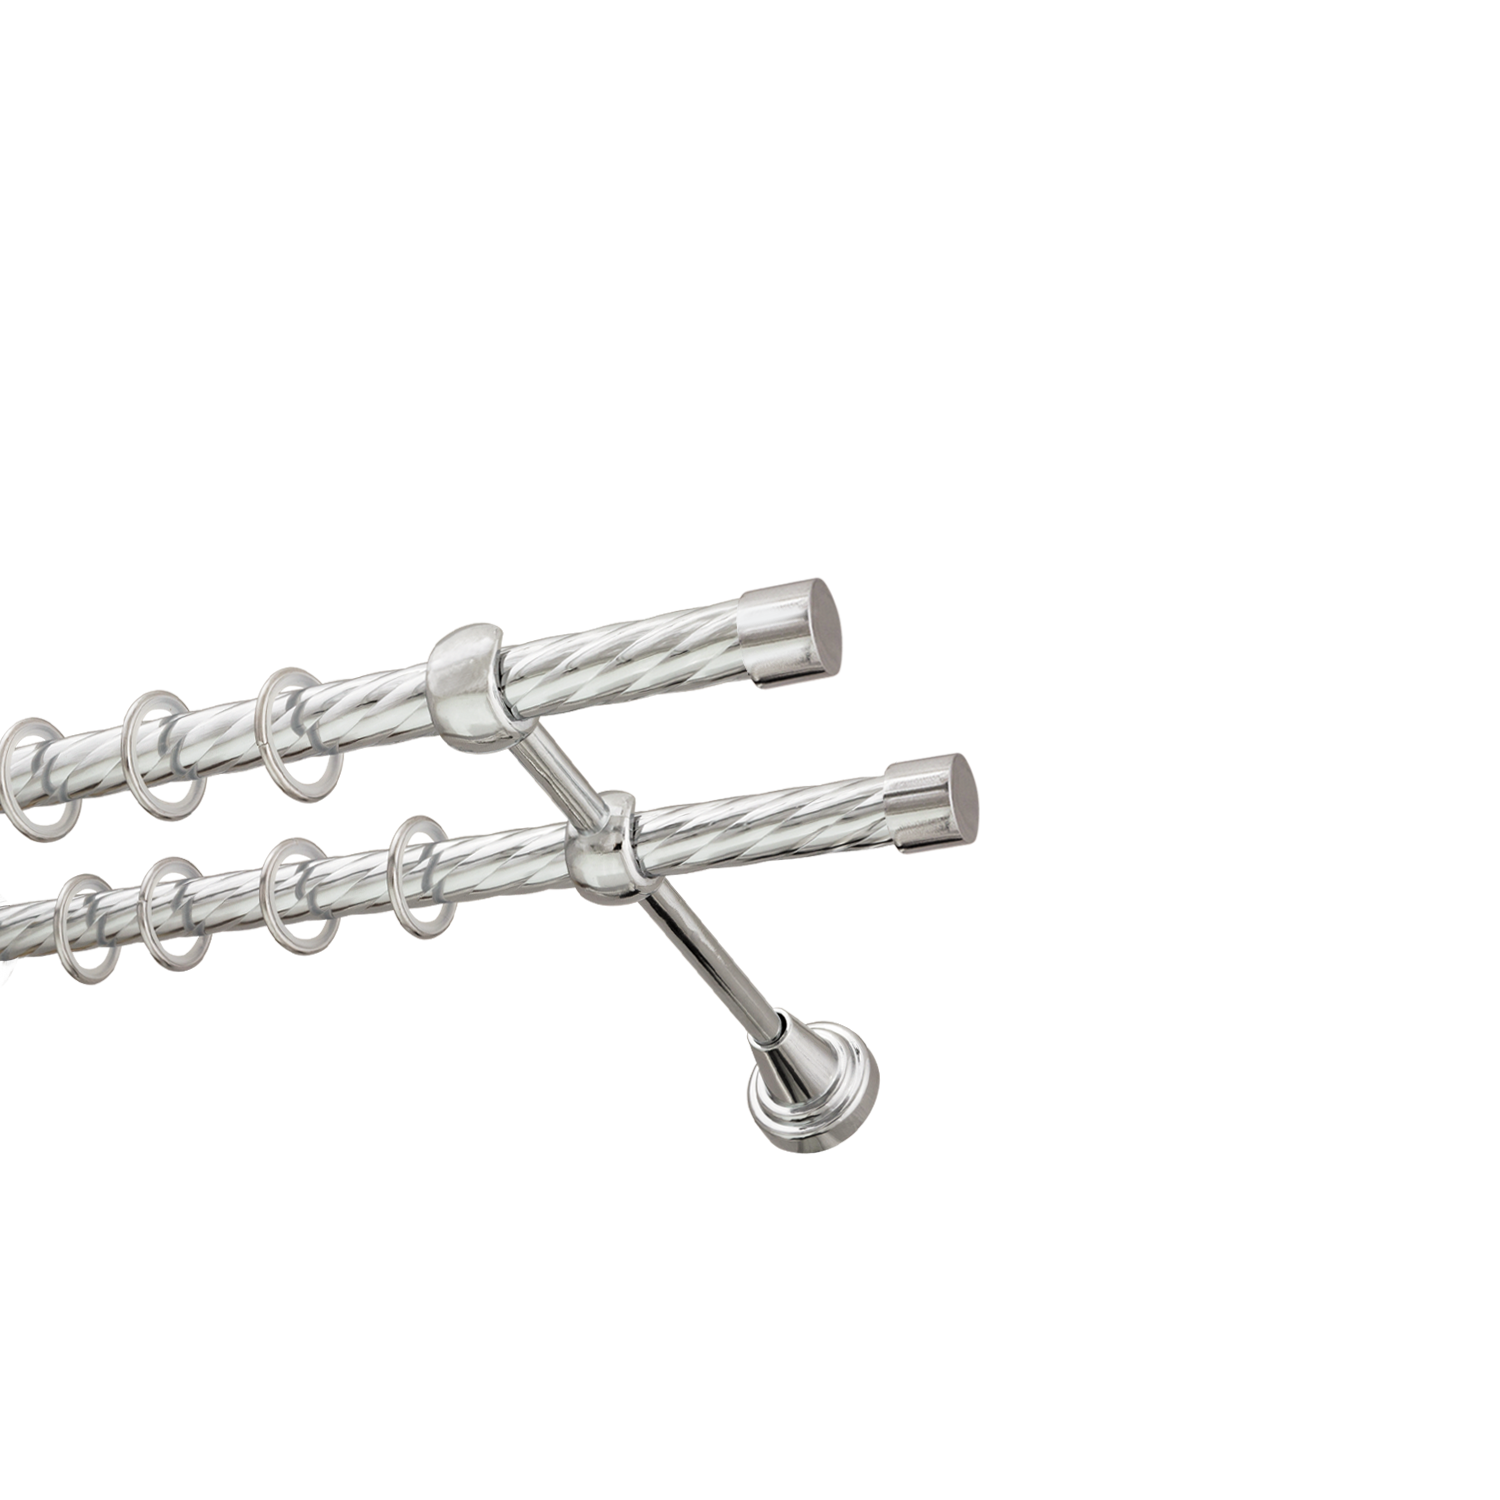 Металлический карниз для штор Заглушка, двухрядный 16/16 мм, серебро, витая штанга, длина 200 см